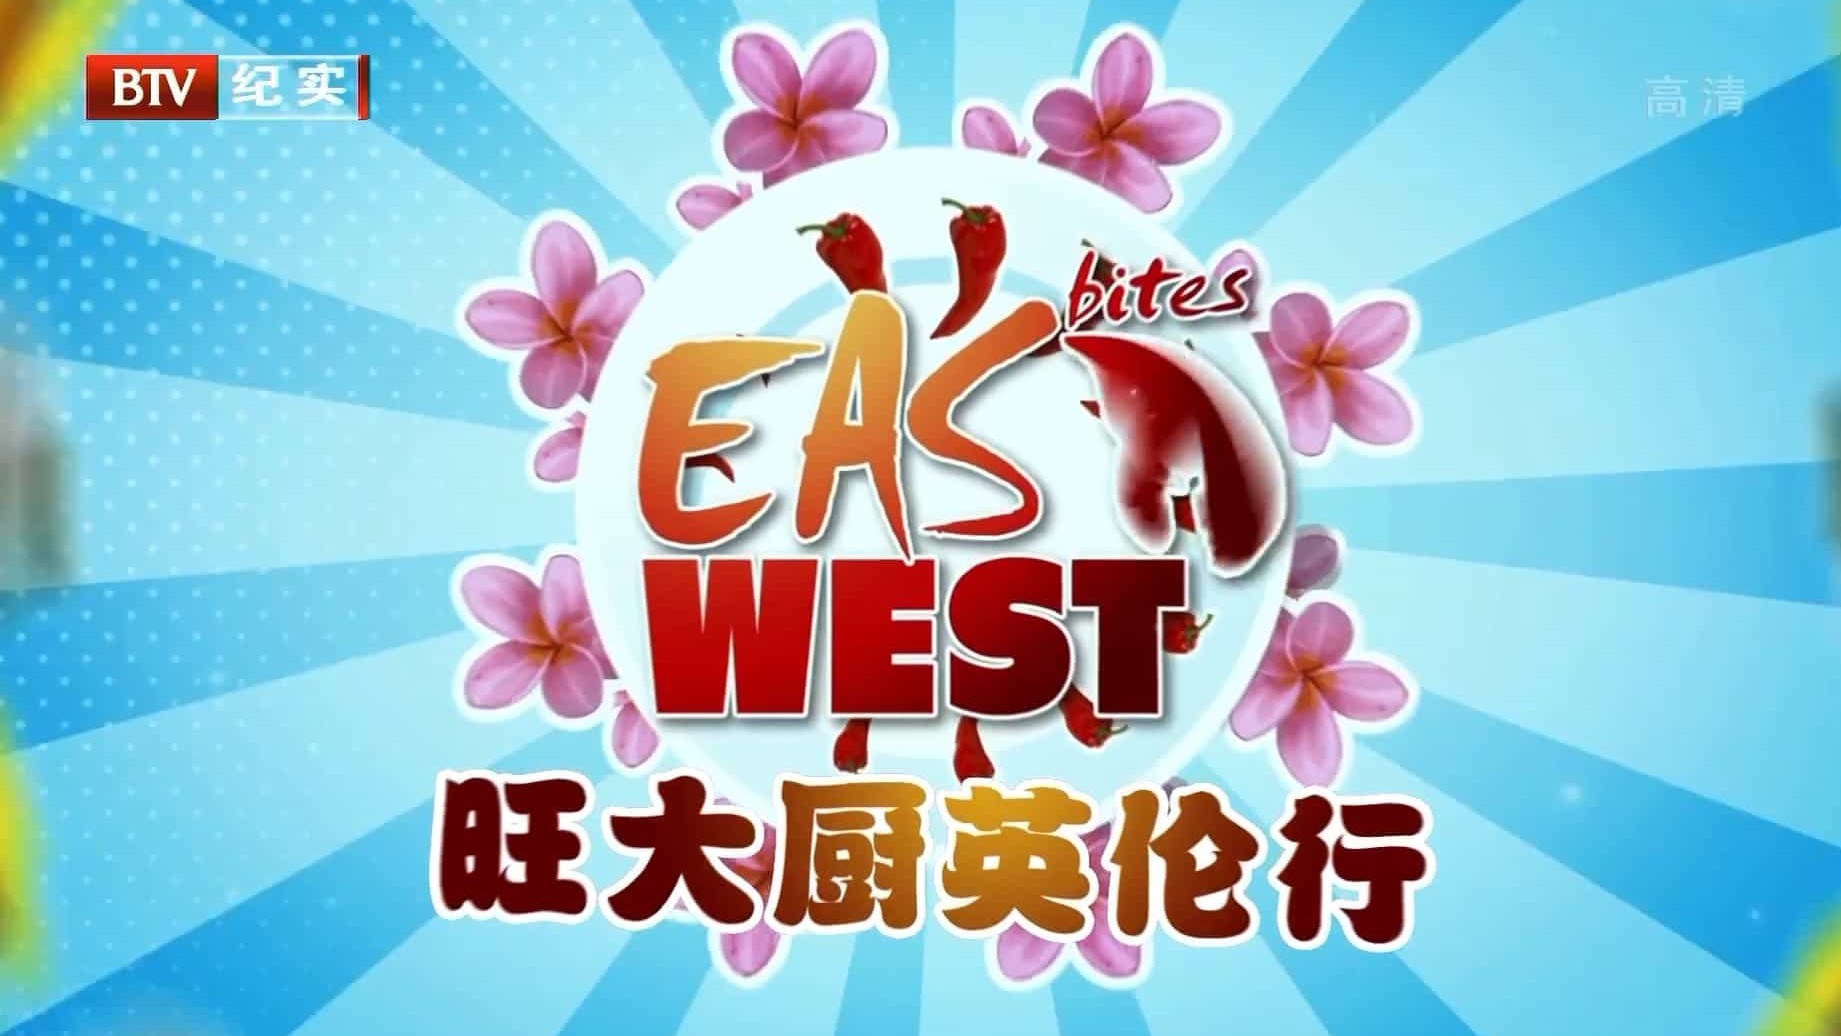 国家地理频道/世界美食系列《旺大厨英伦行 East Bites West with Chef Wan 2015》全6集 国语中字 BTV引进版 1080i高清下载